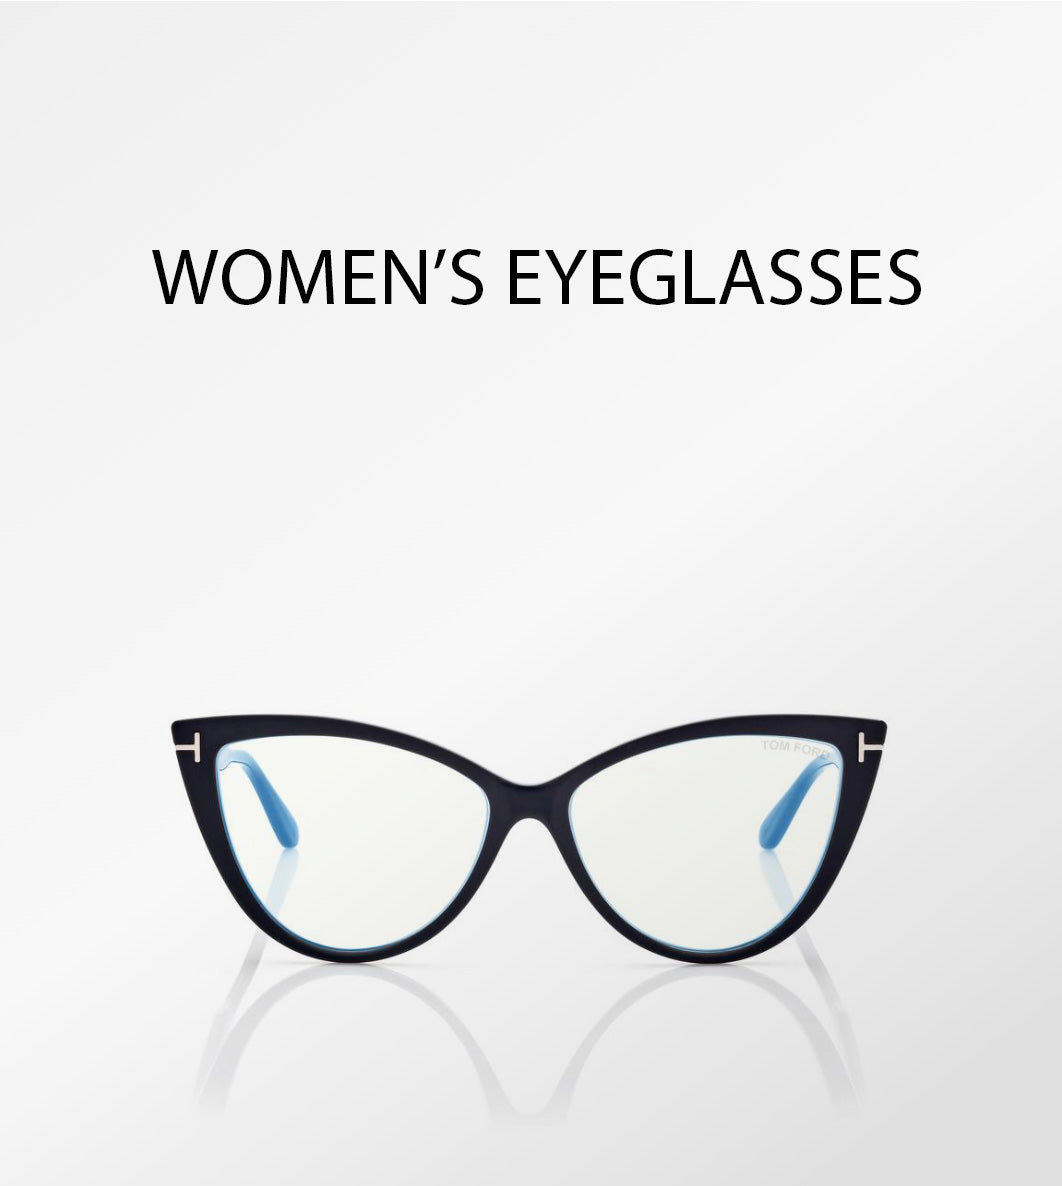 Tom Ford eyeglasses for women